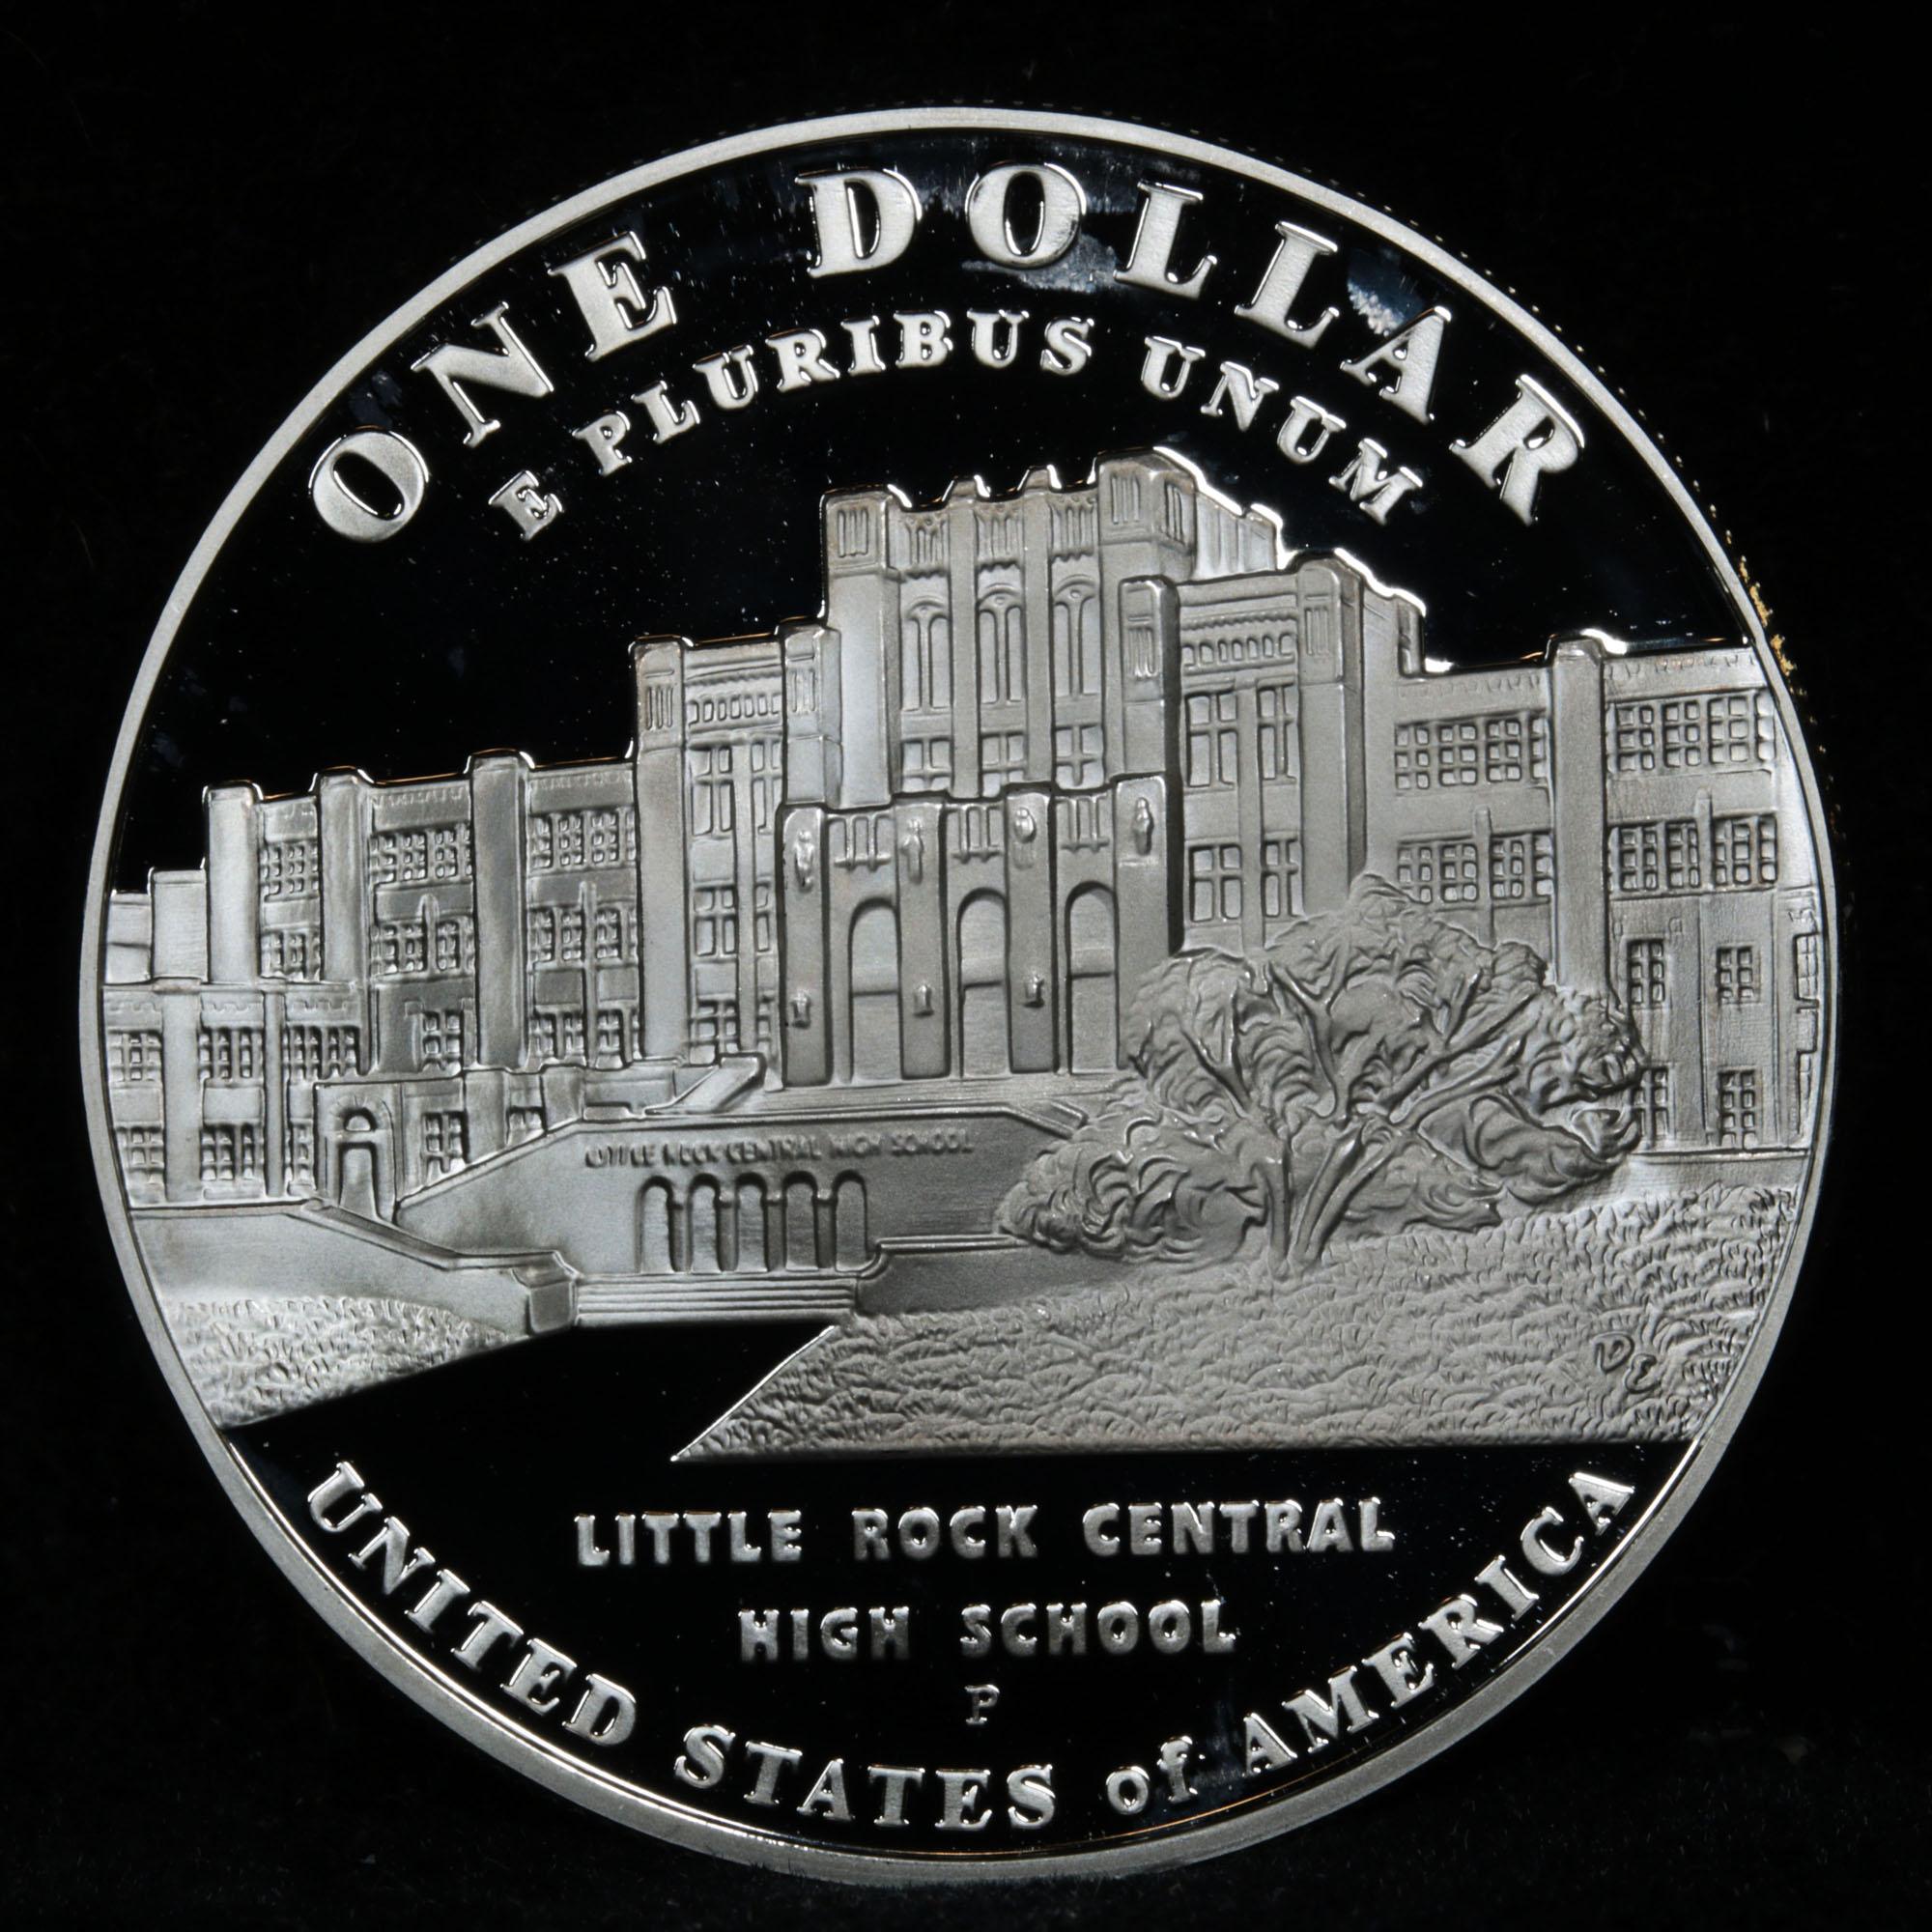 2007 P Little Rock School Segregation Modern Commem Dollar $1 Graded GEM++ Proof Deep Cameo By USCG